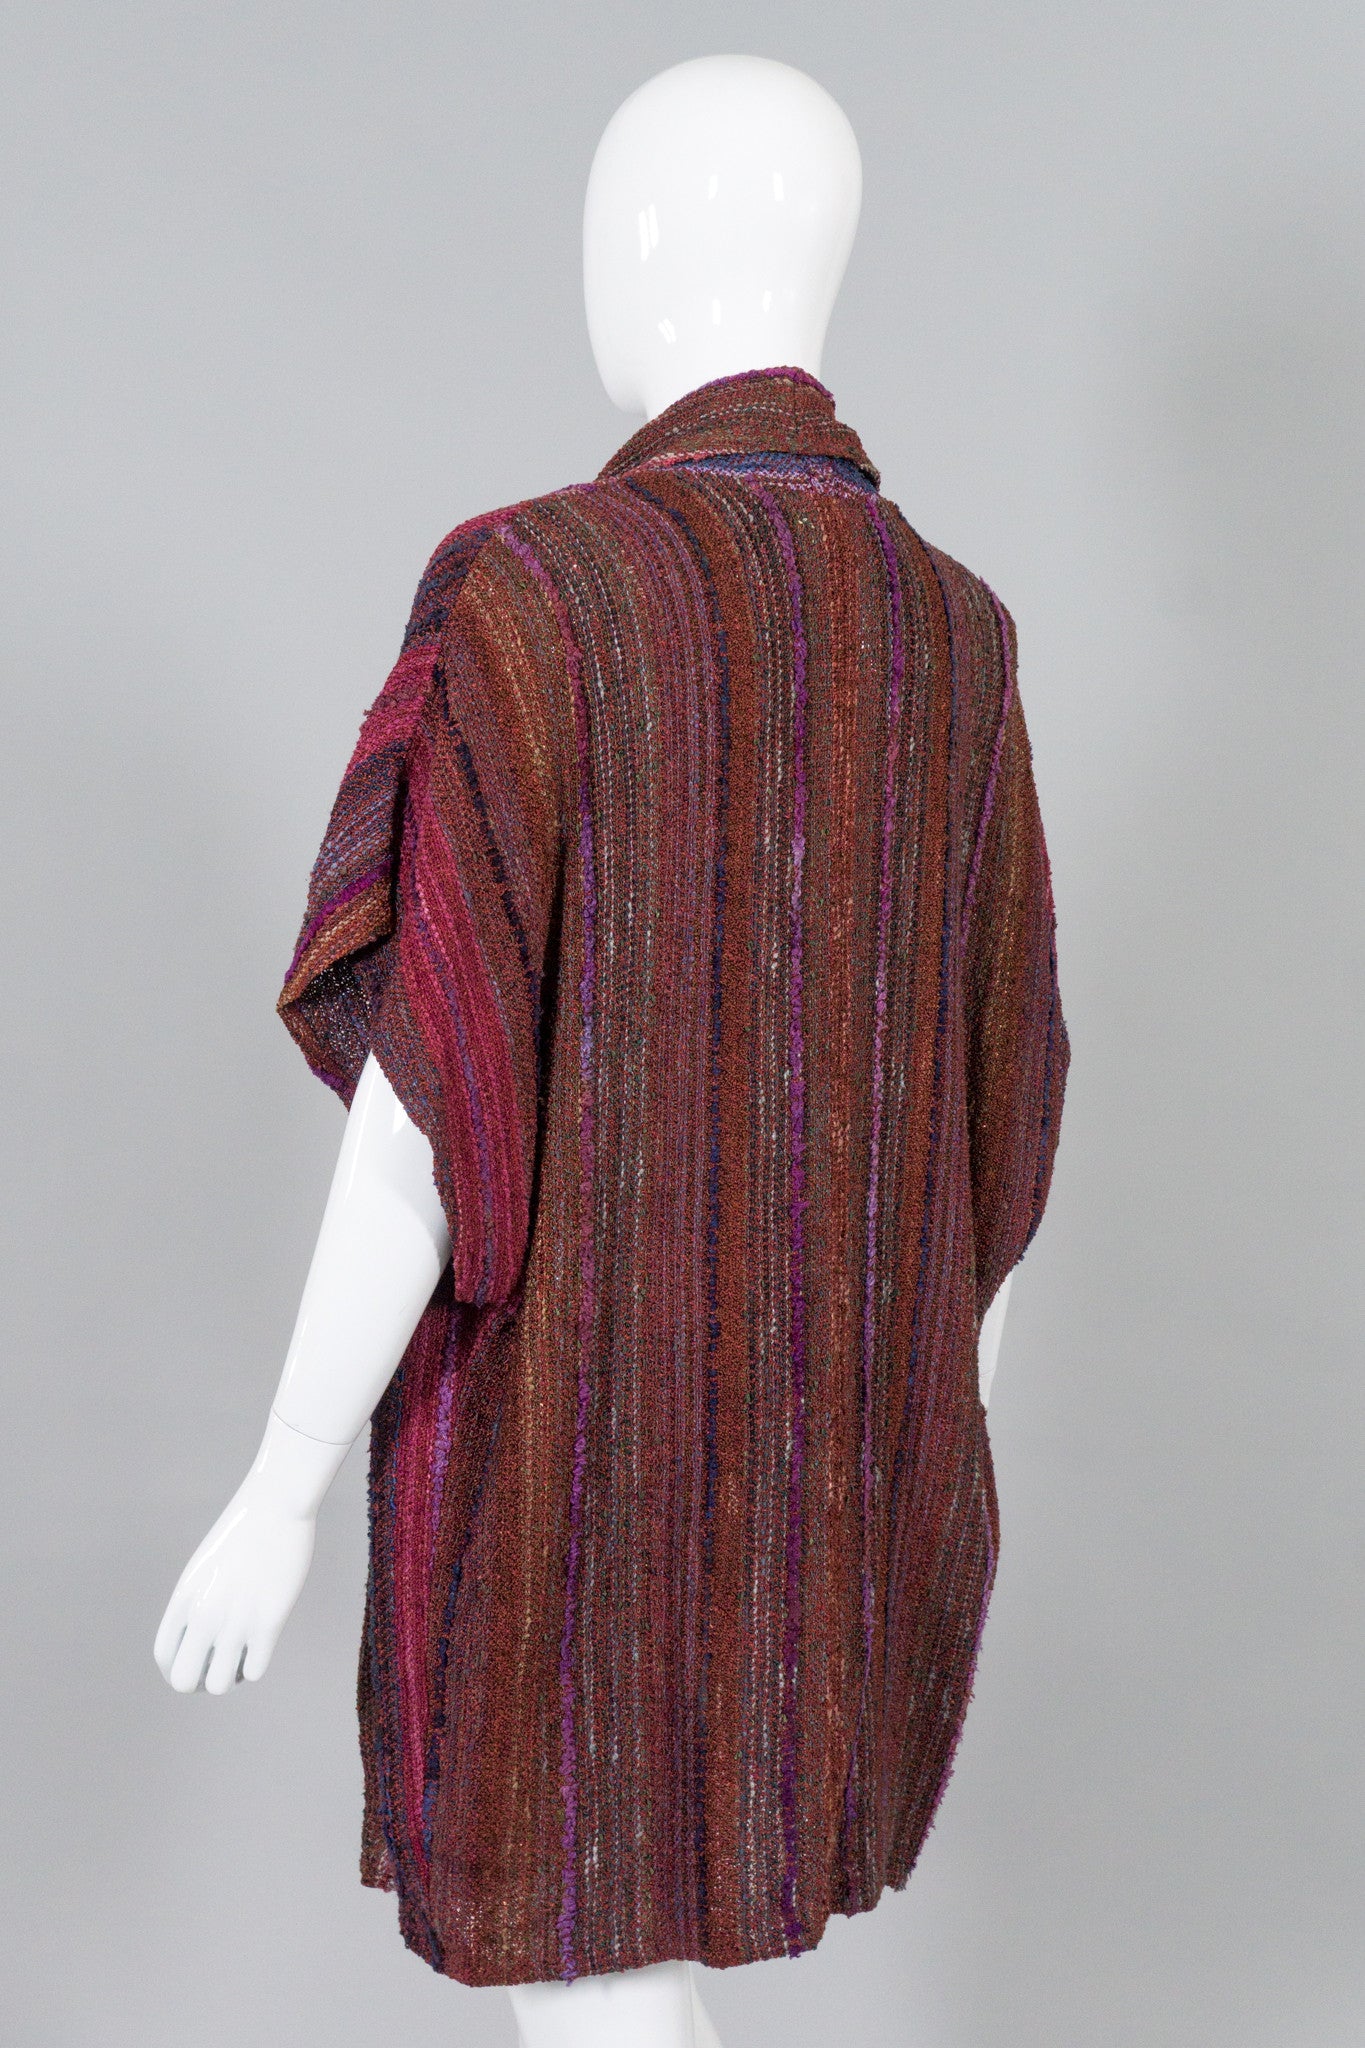 Zonda Nellis Striped Woven Kimono Sweater Vest